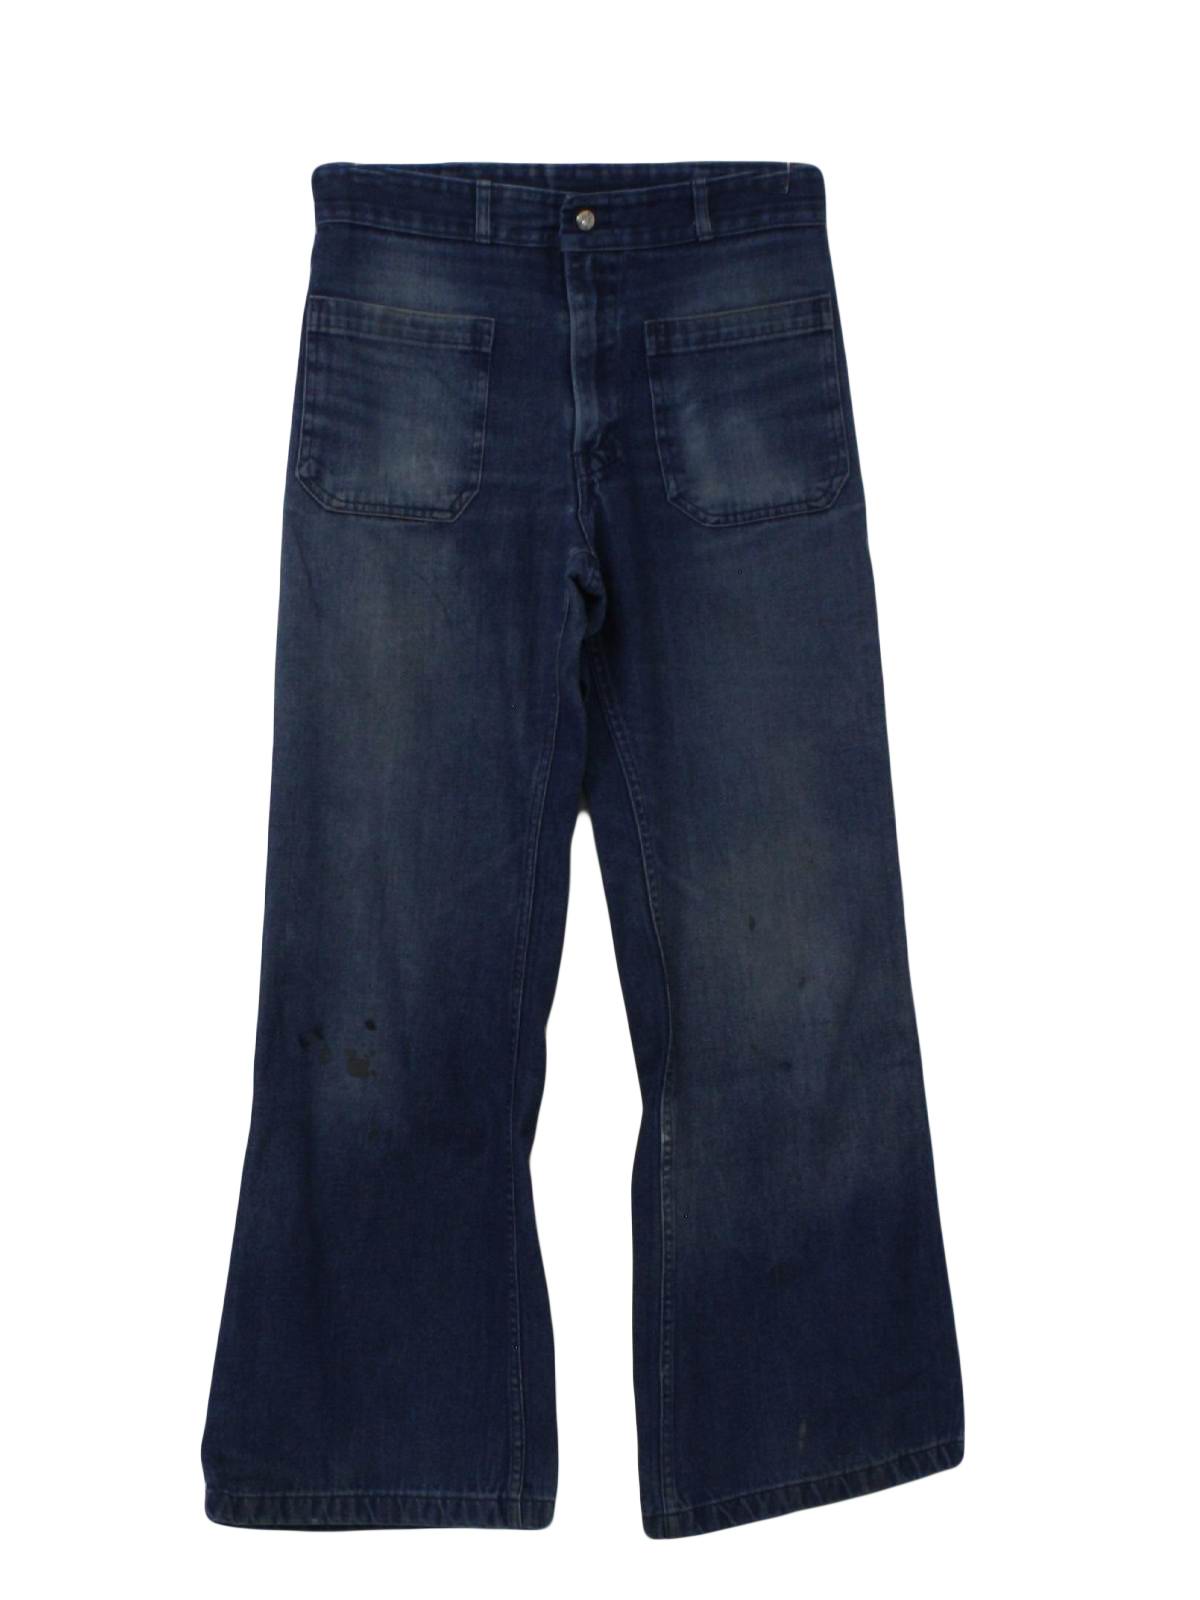 Seafarer 1970s Vintage Bellbottom Pants: 70s -Seafarer- Mens faded blue ...